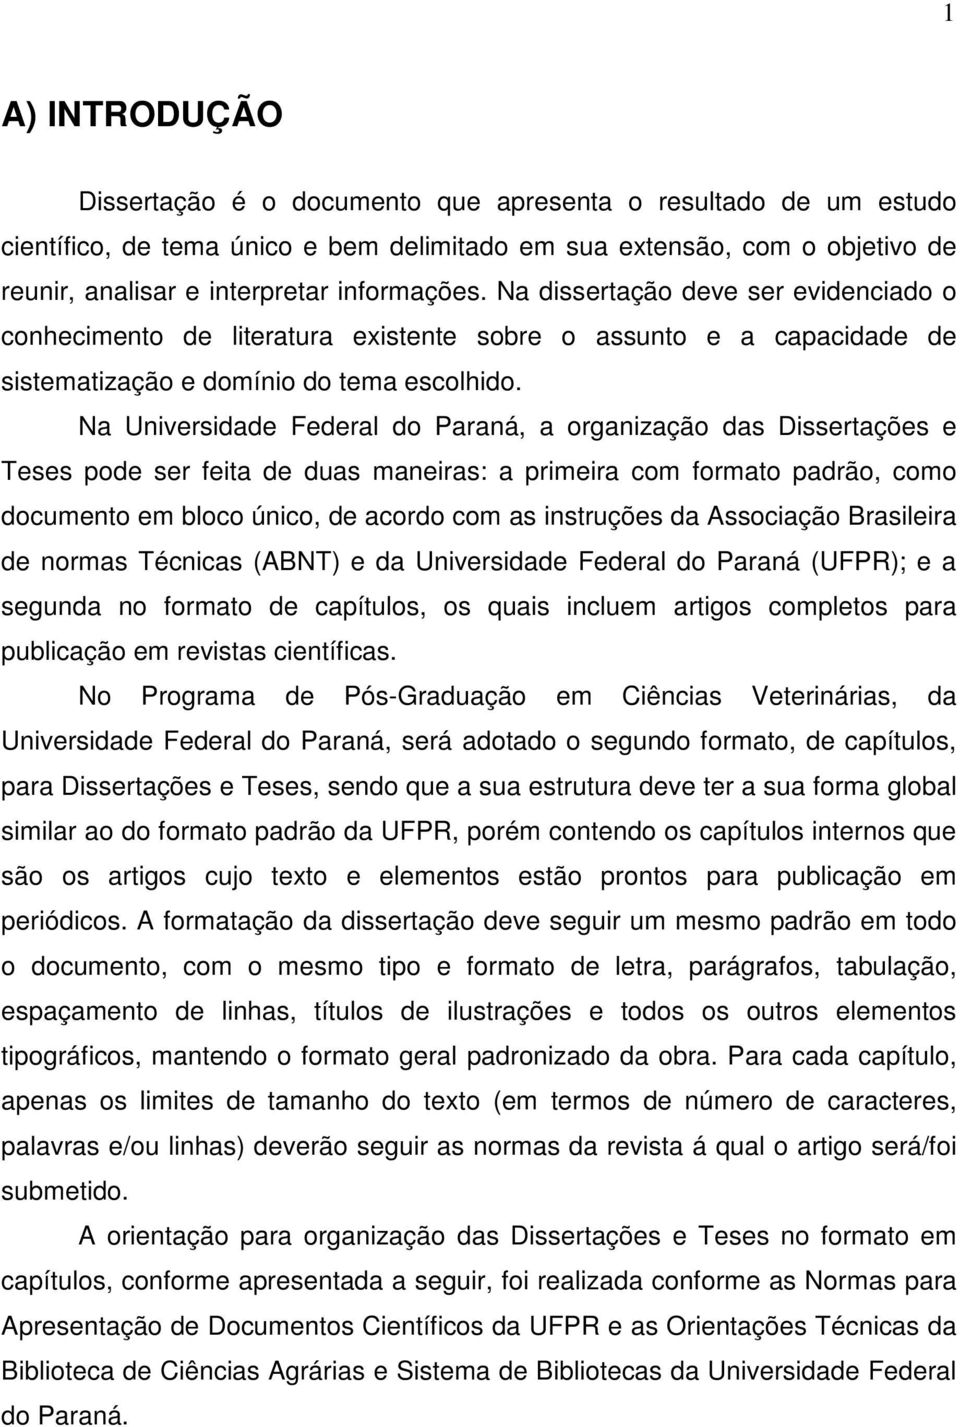 Na Universidade Federal do Paraná, a organização das Dissertações e Teses pode ser feita de duas maneiras: a primeira com formato padrão, como documento em bloco único, de acordo com as instruções da